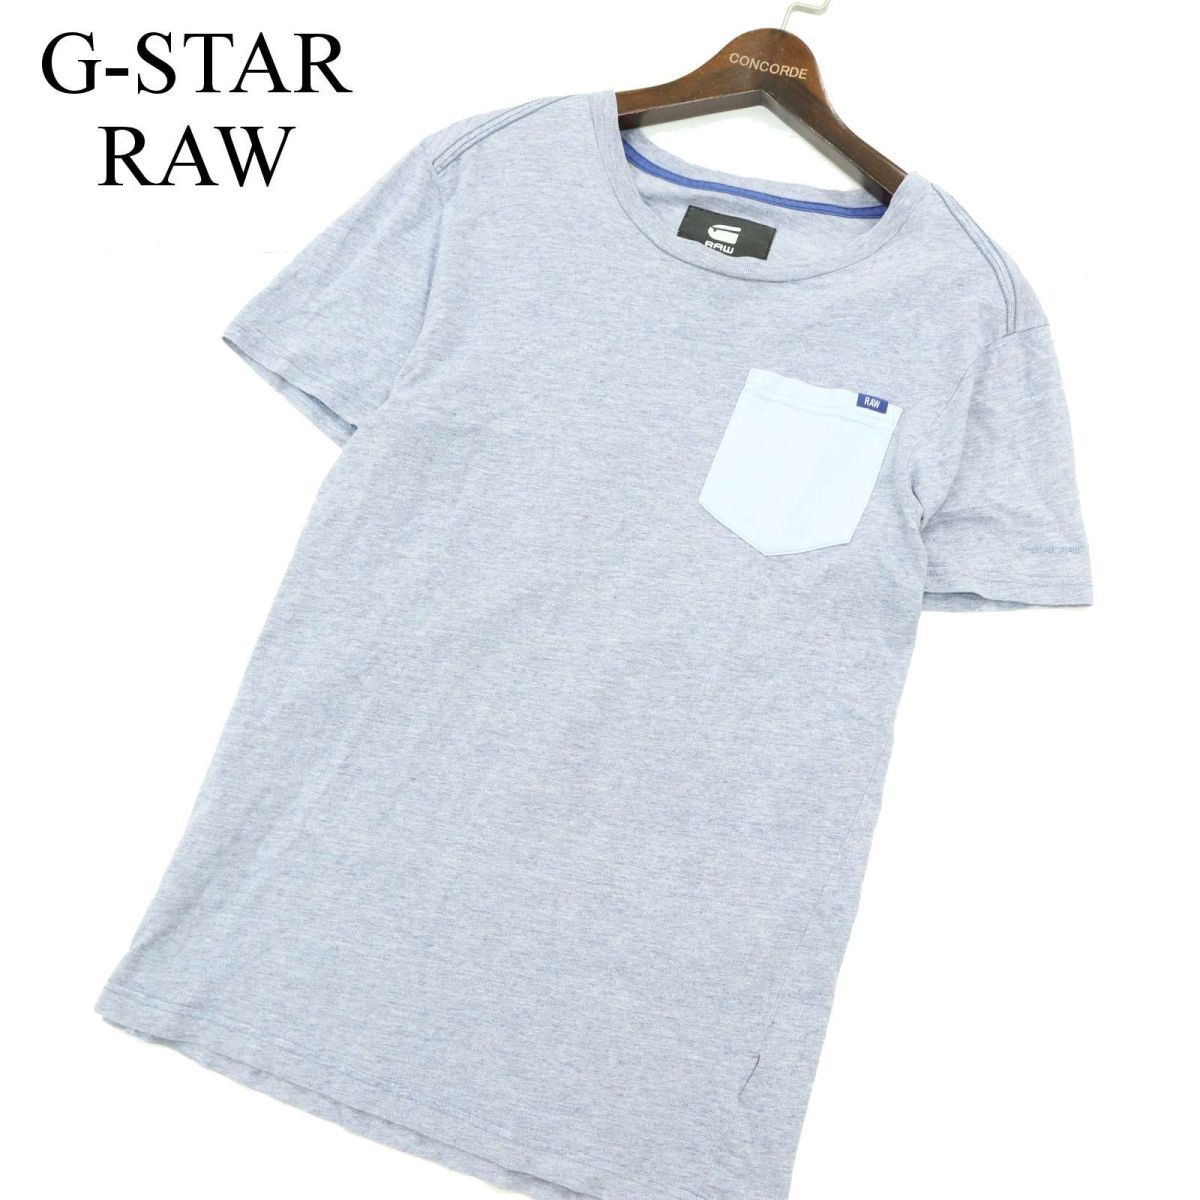 G-STAR RAWji- Star low весна лето [RIBAN POCKET R T S/S] карман * трикотаж с коротким рукавом футболка pokeT Sz.XS мужской синий серия A3T07609_6#D